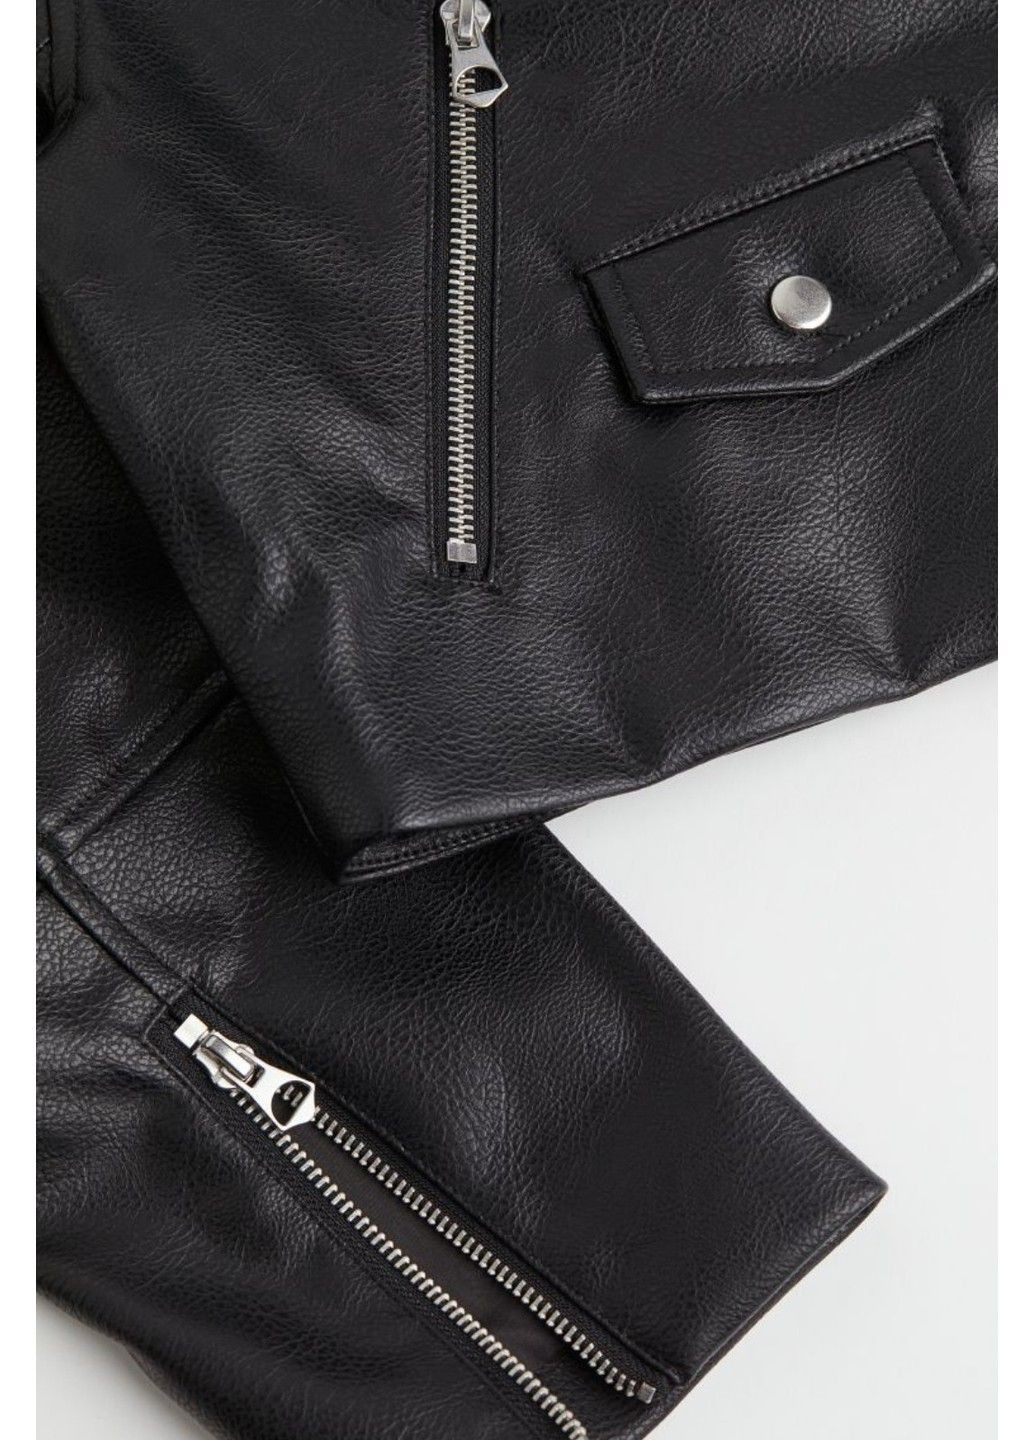 Чорна демісезонна жіноча куртка-косуха з еко-шкіри н&м (56604) xxs чорна H&M